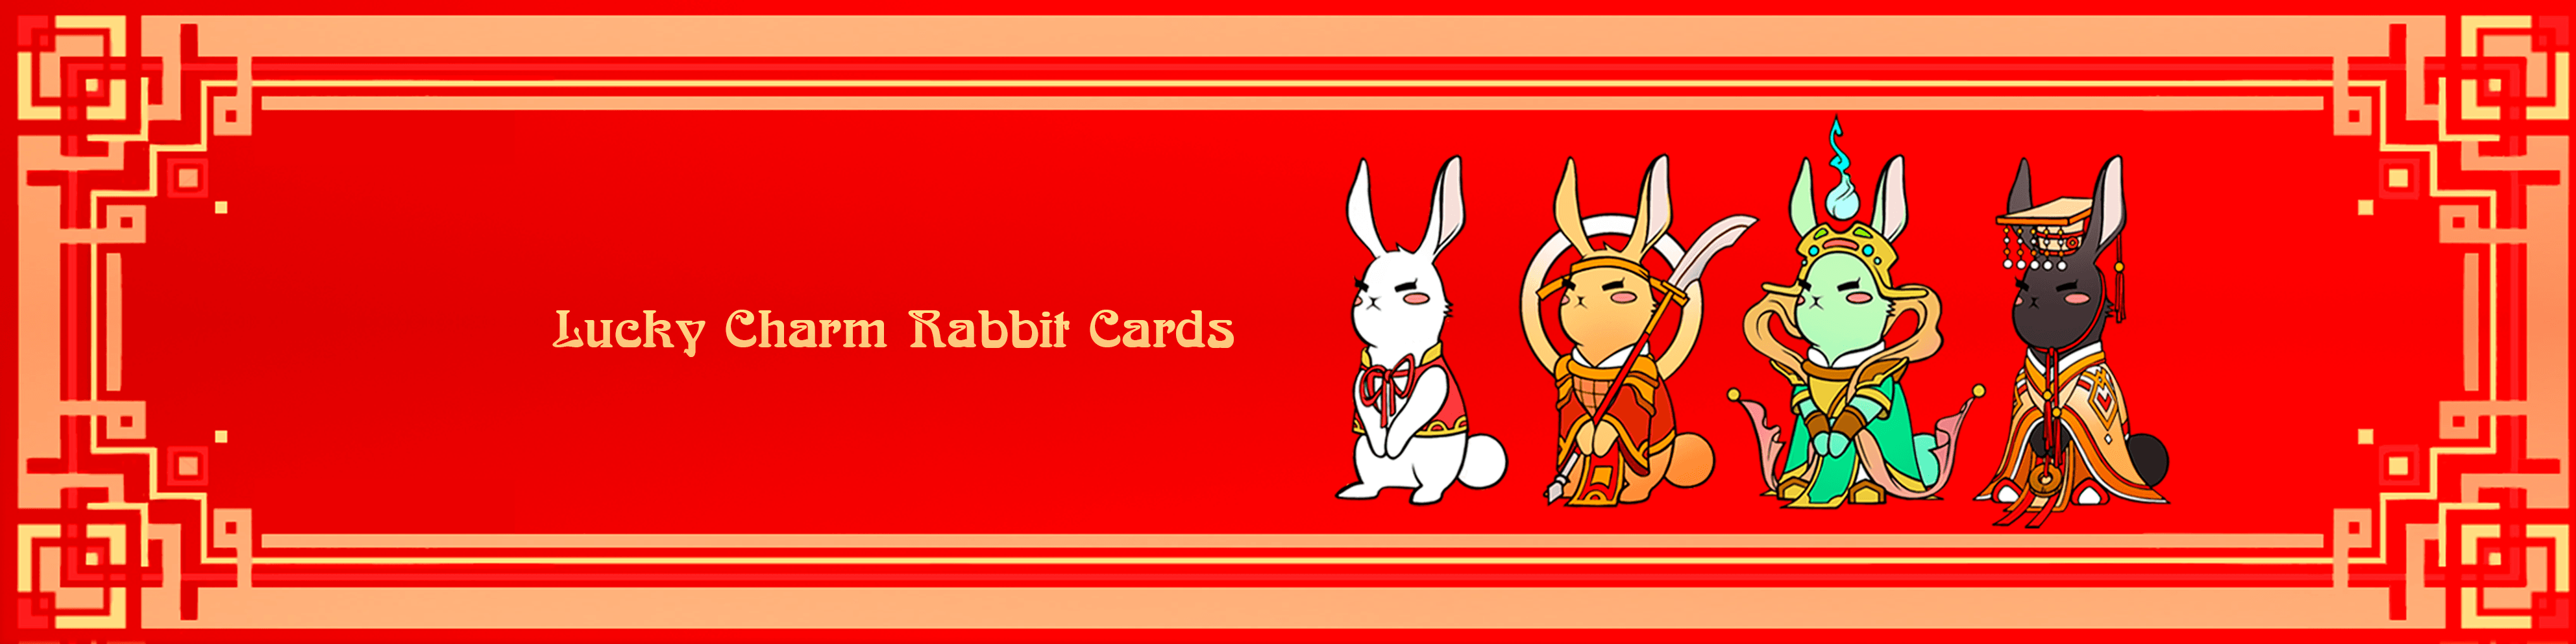 Lucky Charm Rabbit Cards